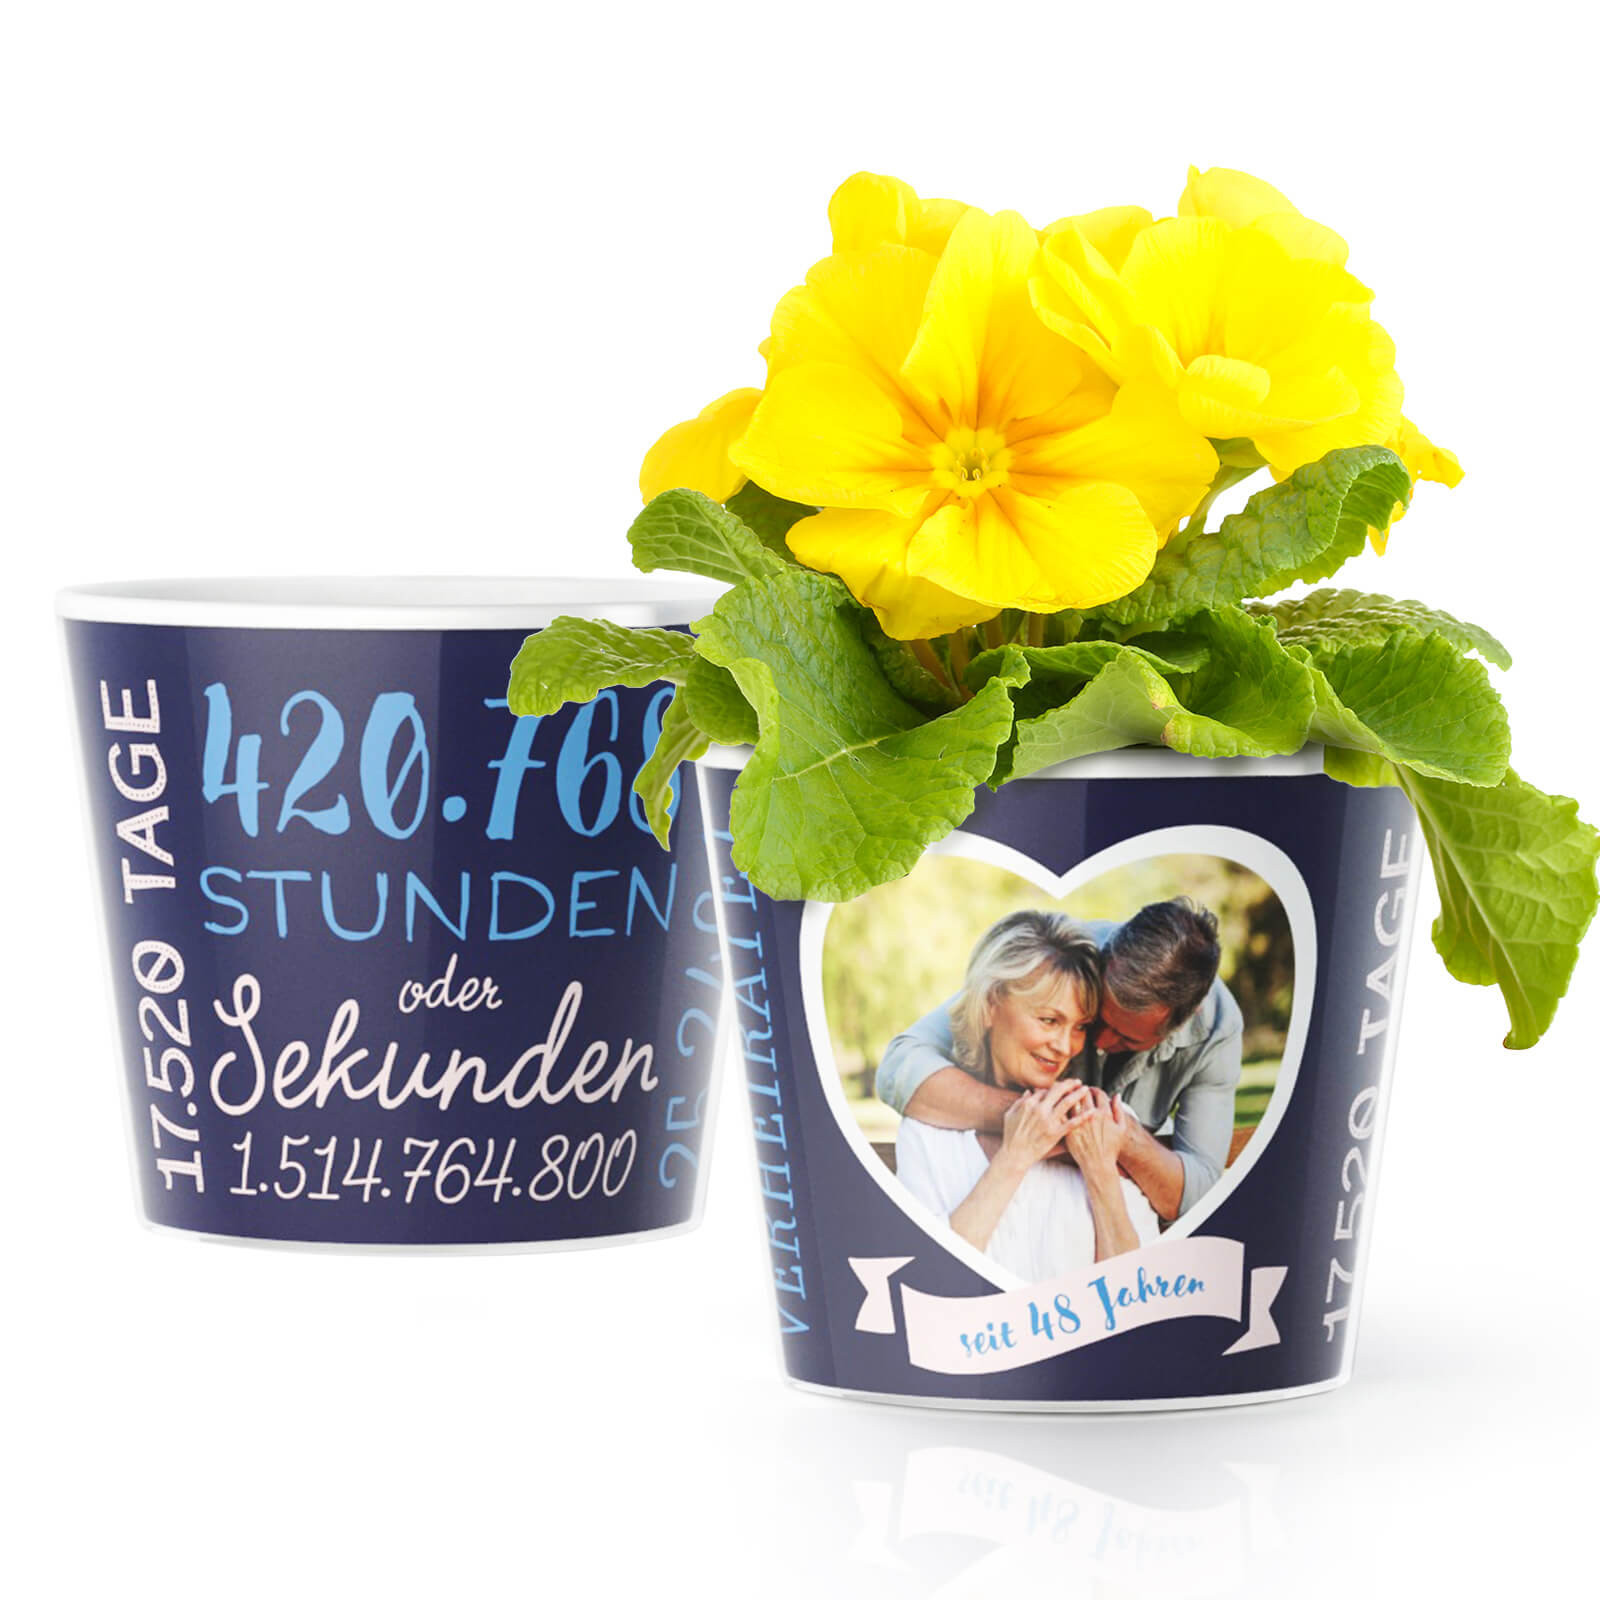 Geschenke Zum Hochzeitstag
 48 Hochzeitstag Diademhochzeit – Blumentopf von MyFacepot